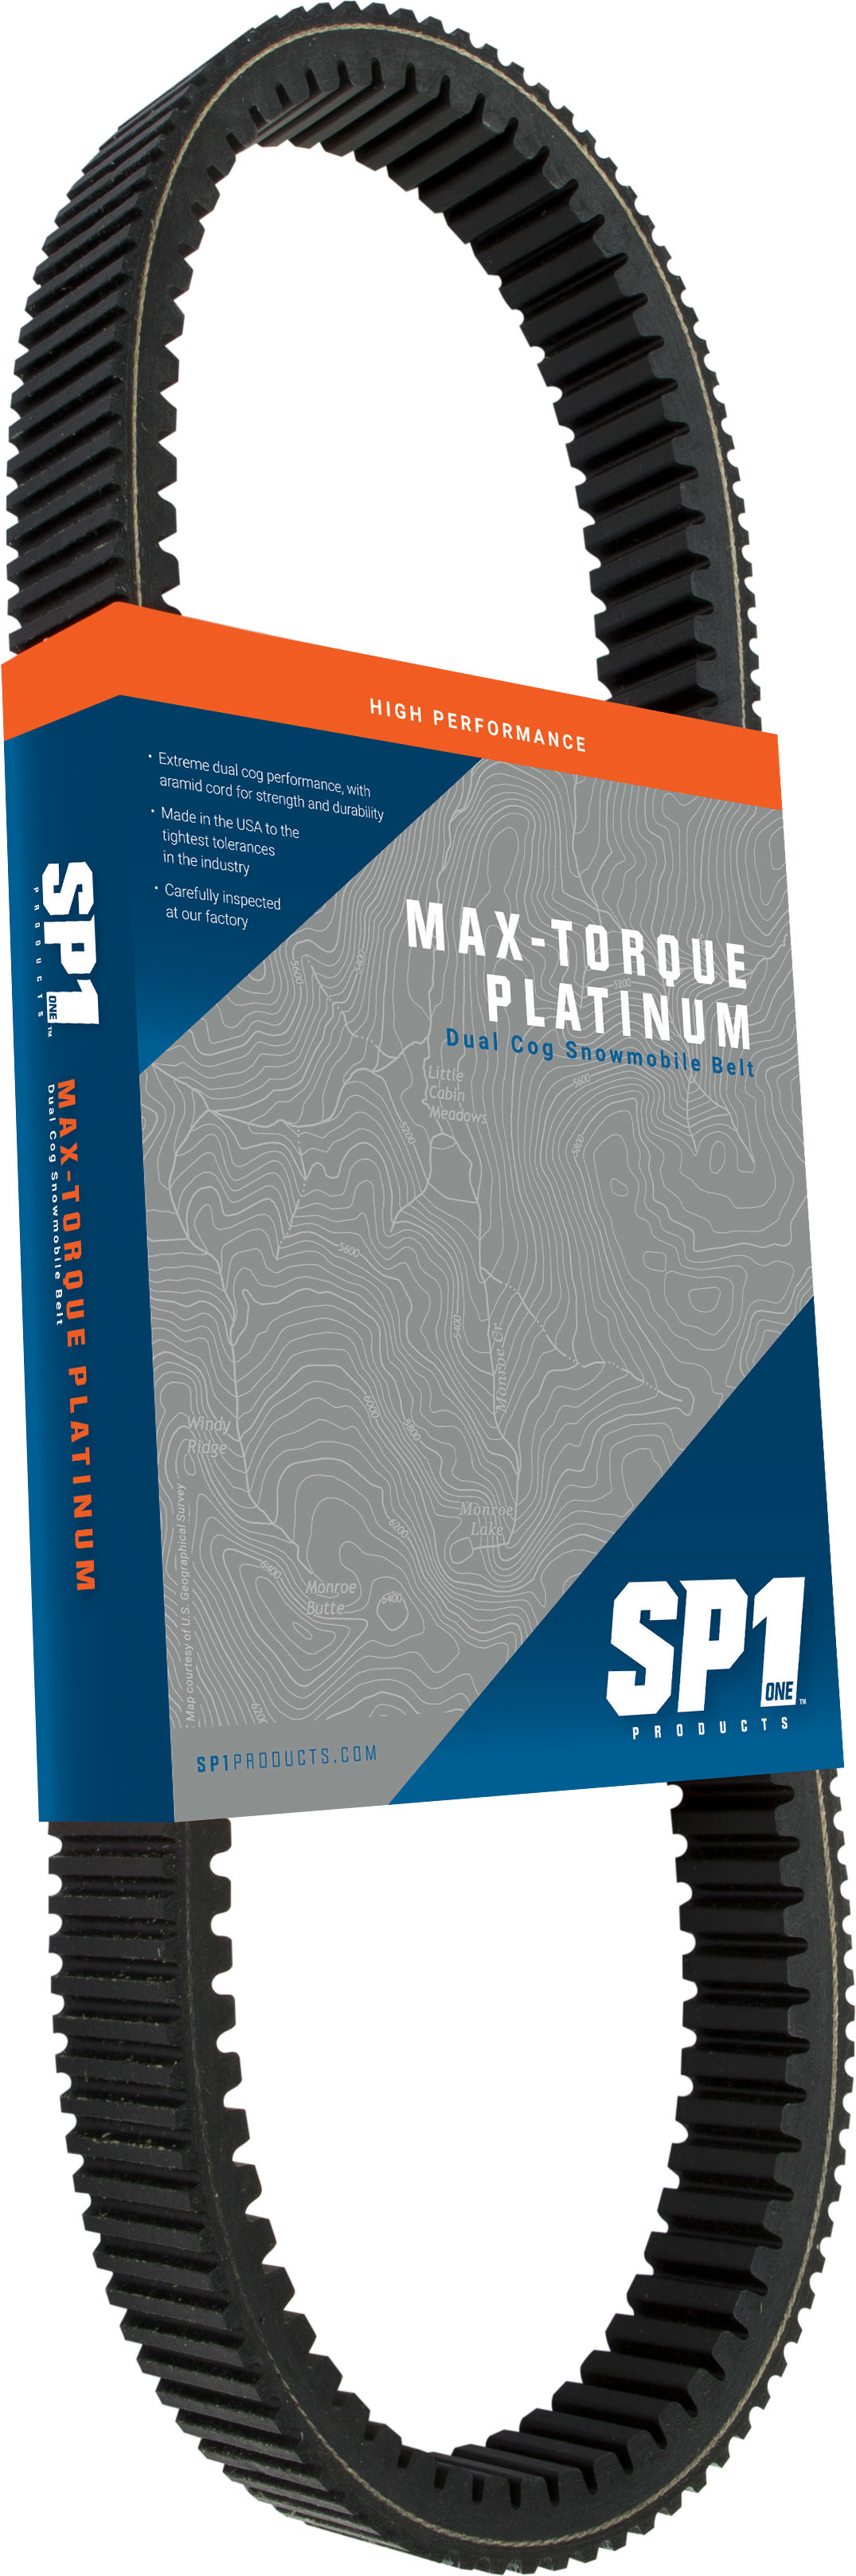 Sp1 - Max-torque Platinum Belt 44 5/8" X 1 15/32" - 47-6065